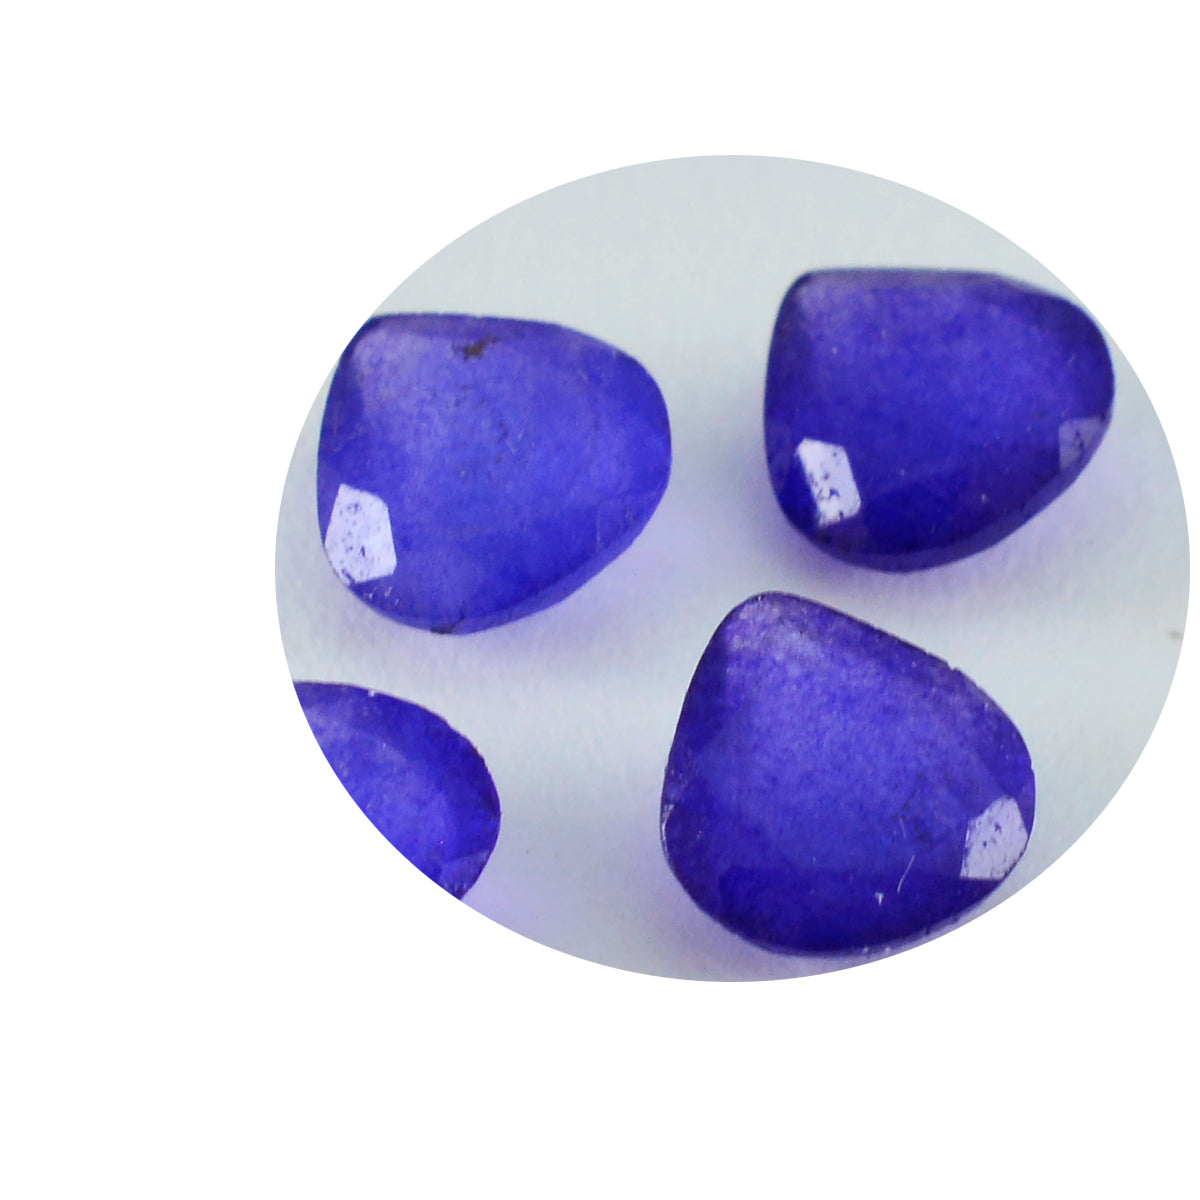 Riyogems 1pc véritable jaspe bleu à facettes 11x11mm forme de coeur superbe qualité pierre précieuse